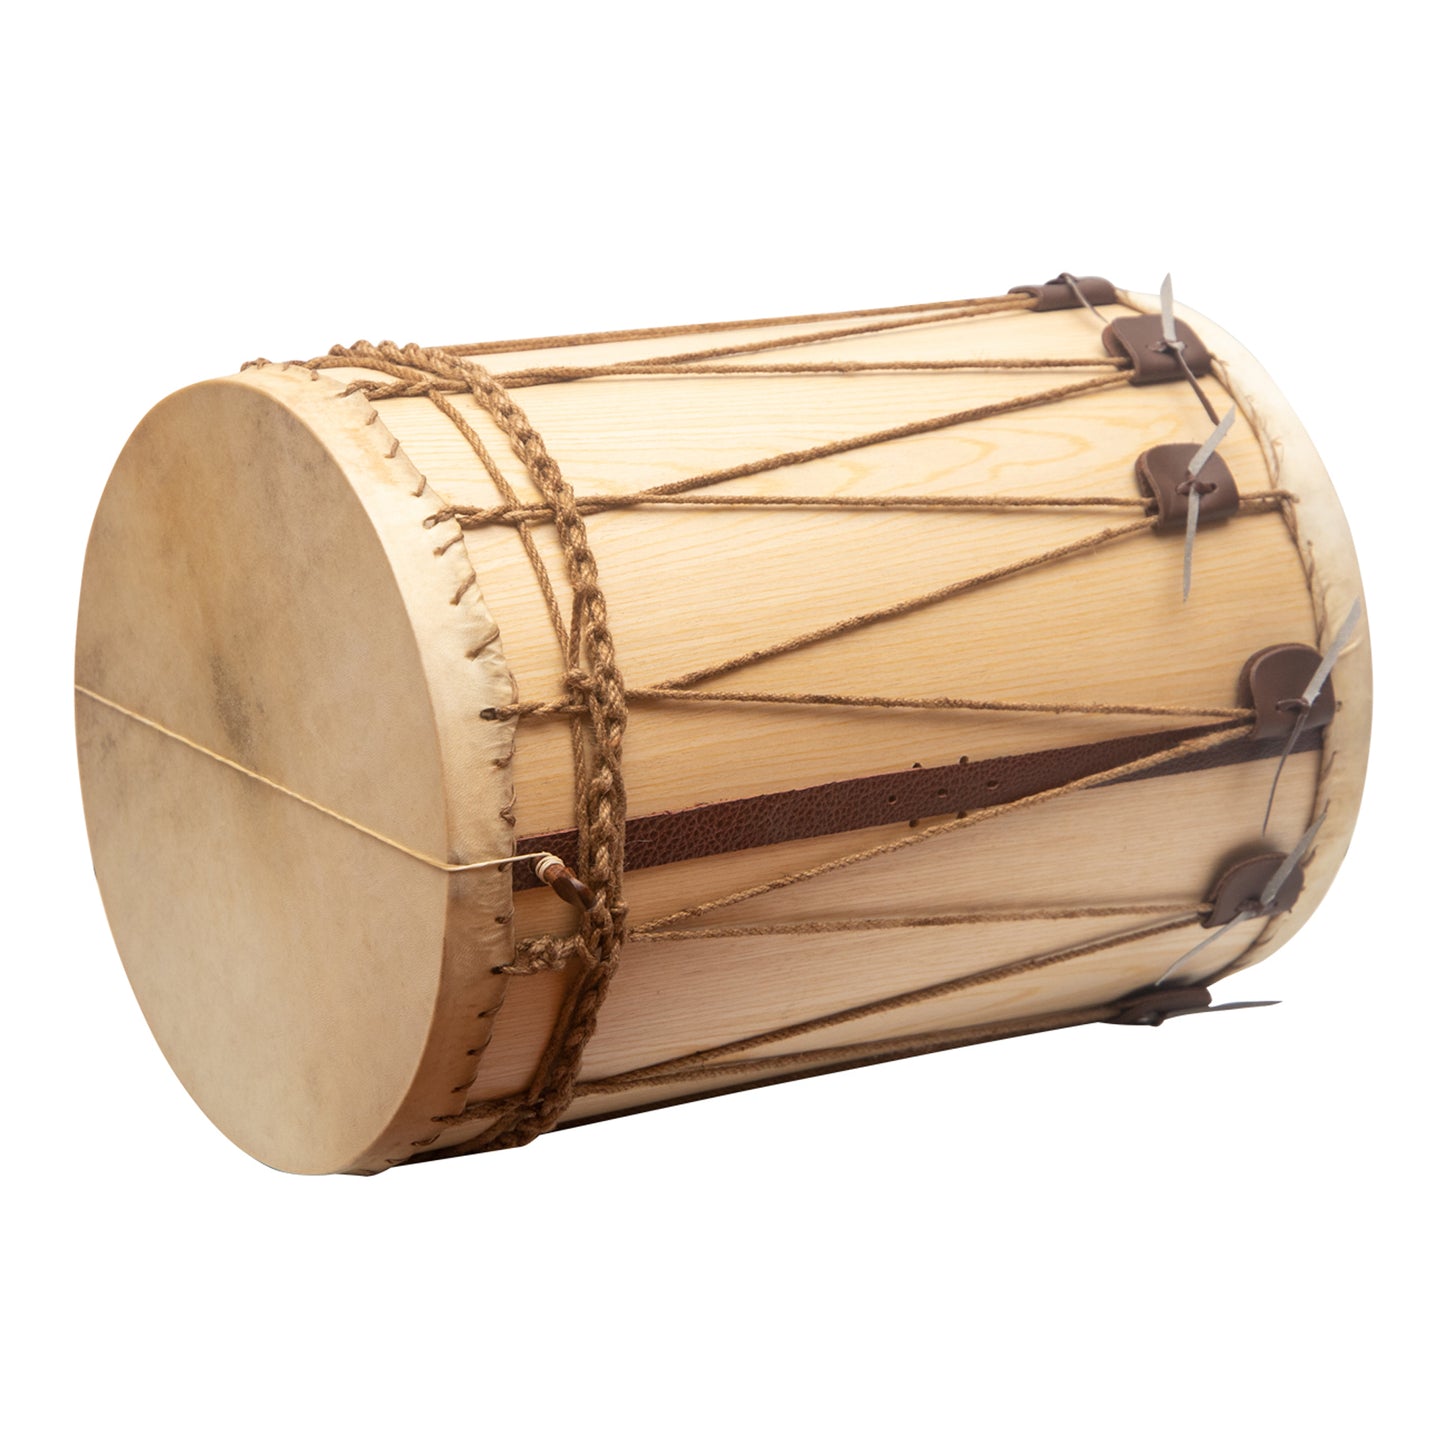 Muzikkon Medieval Drum 13"X19"